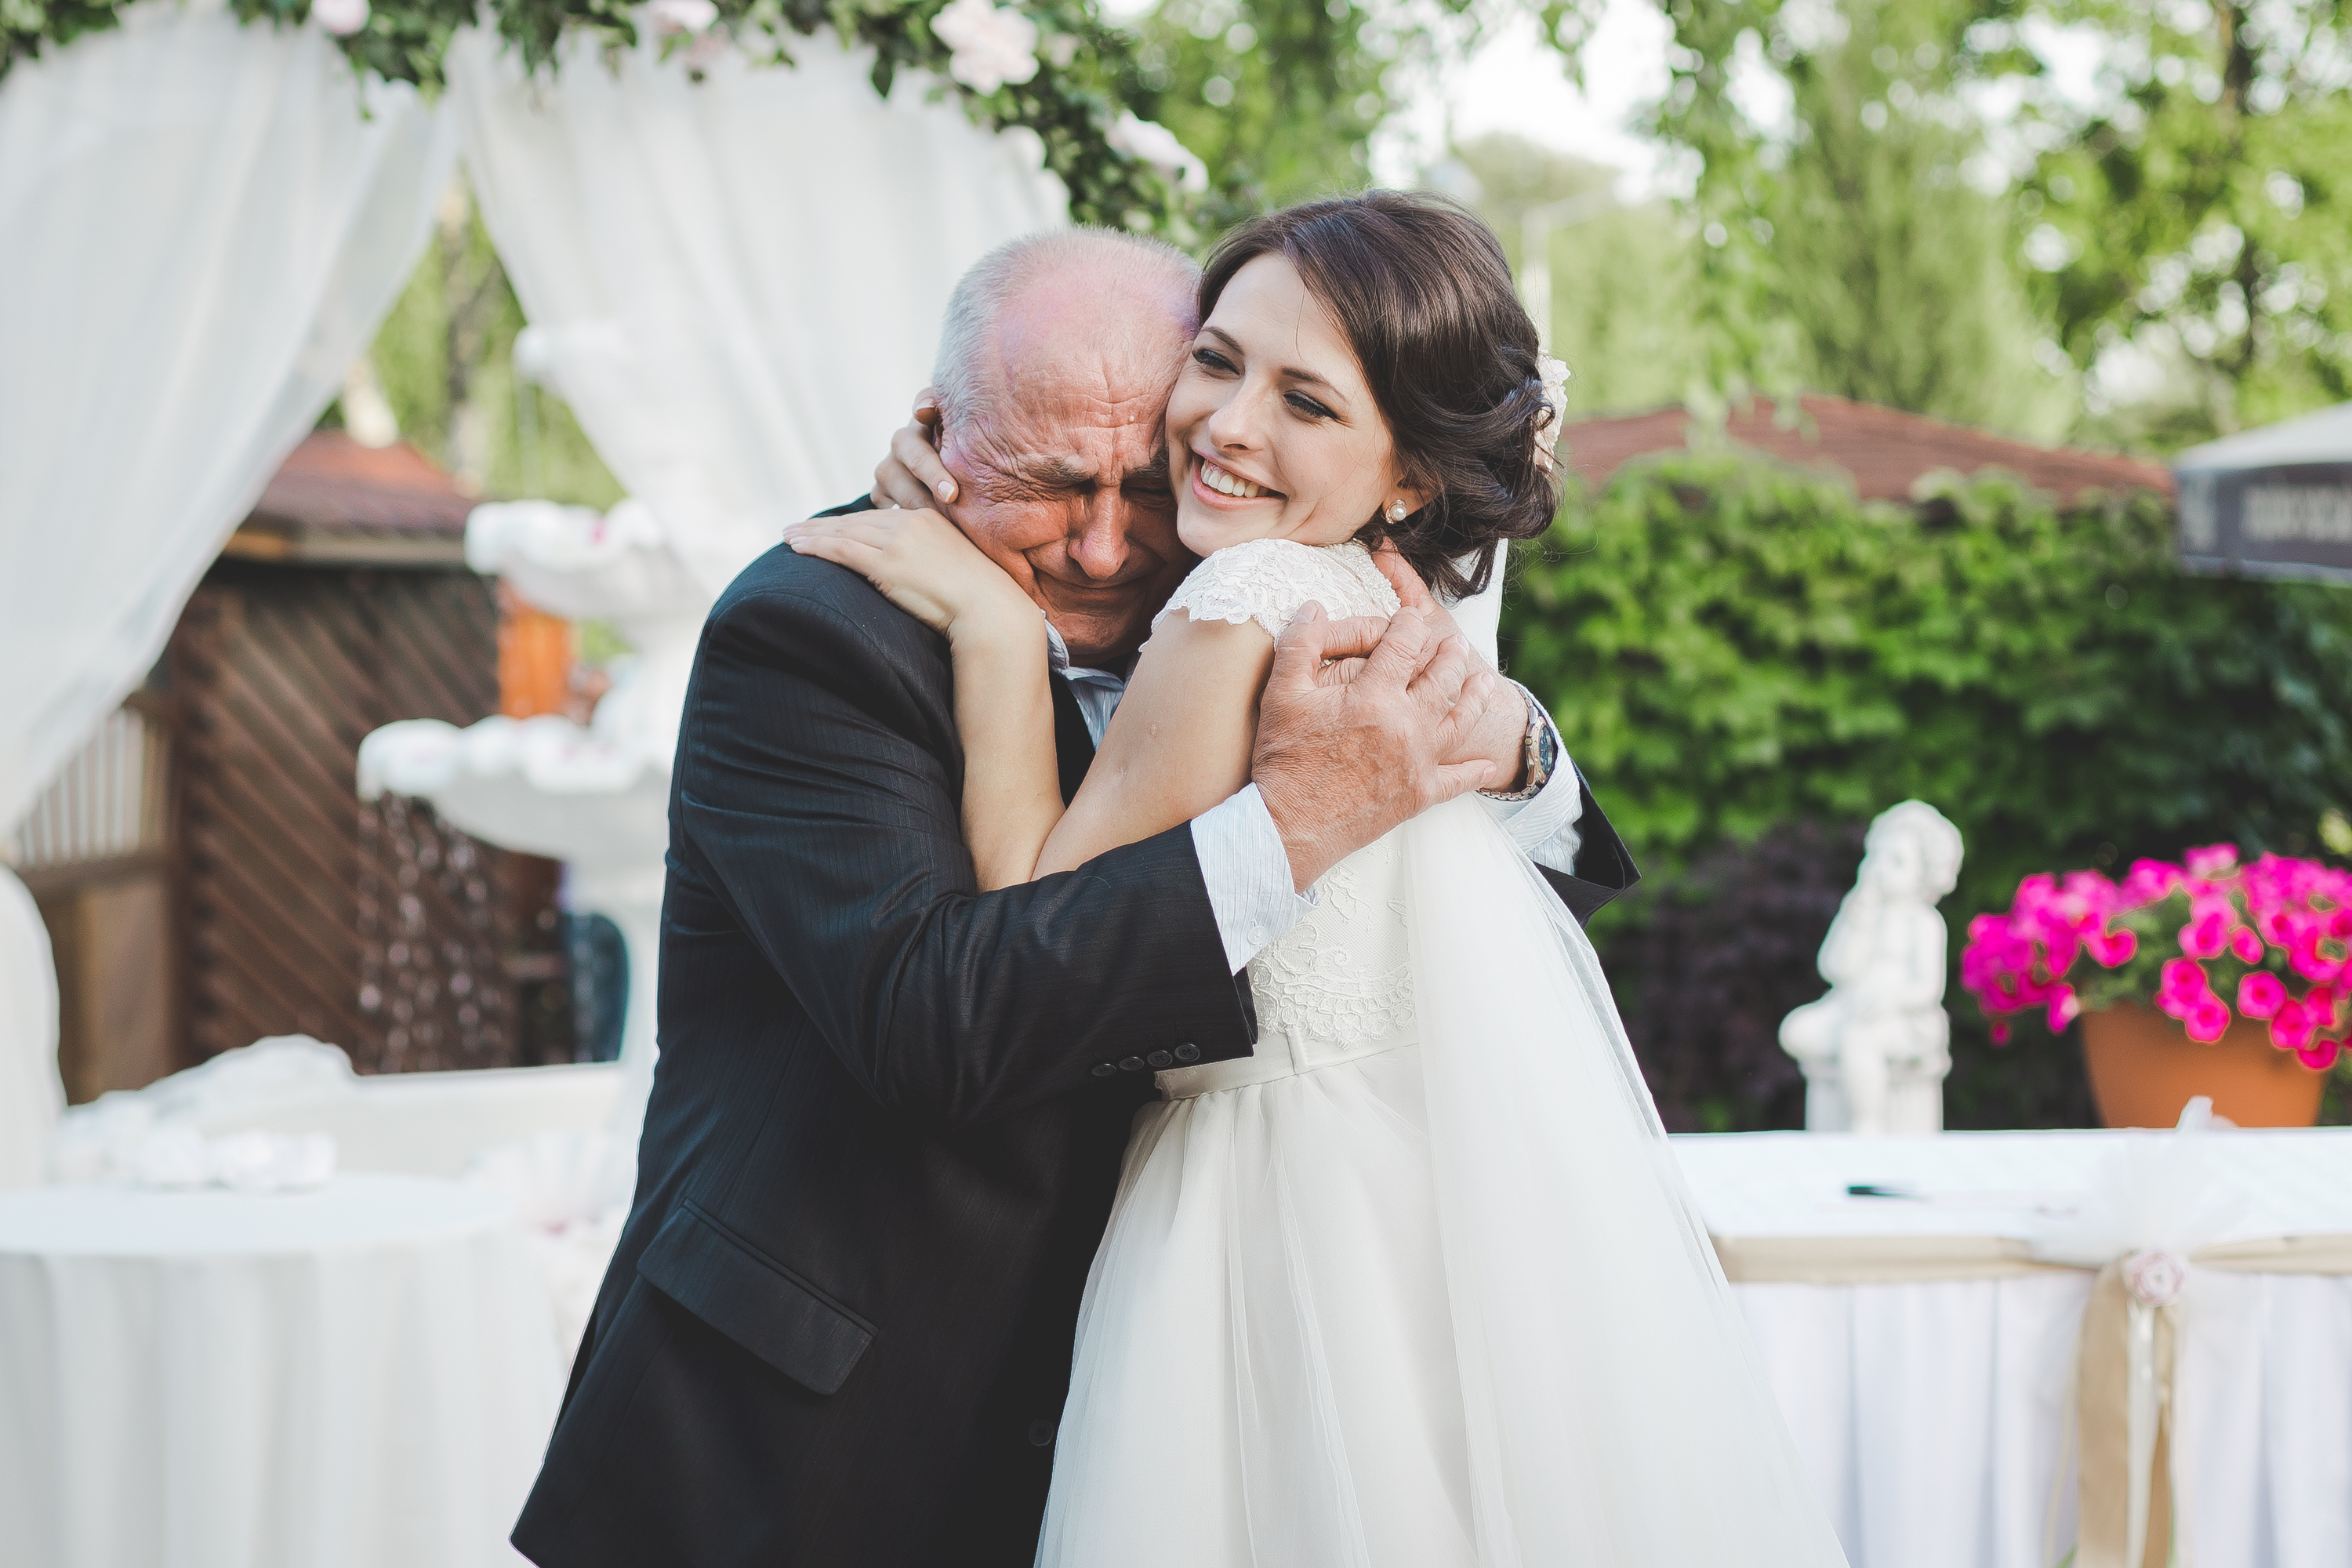 La mariée sourit en serrant un homme plus âgé dans ses bras | Source : Shutterstock